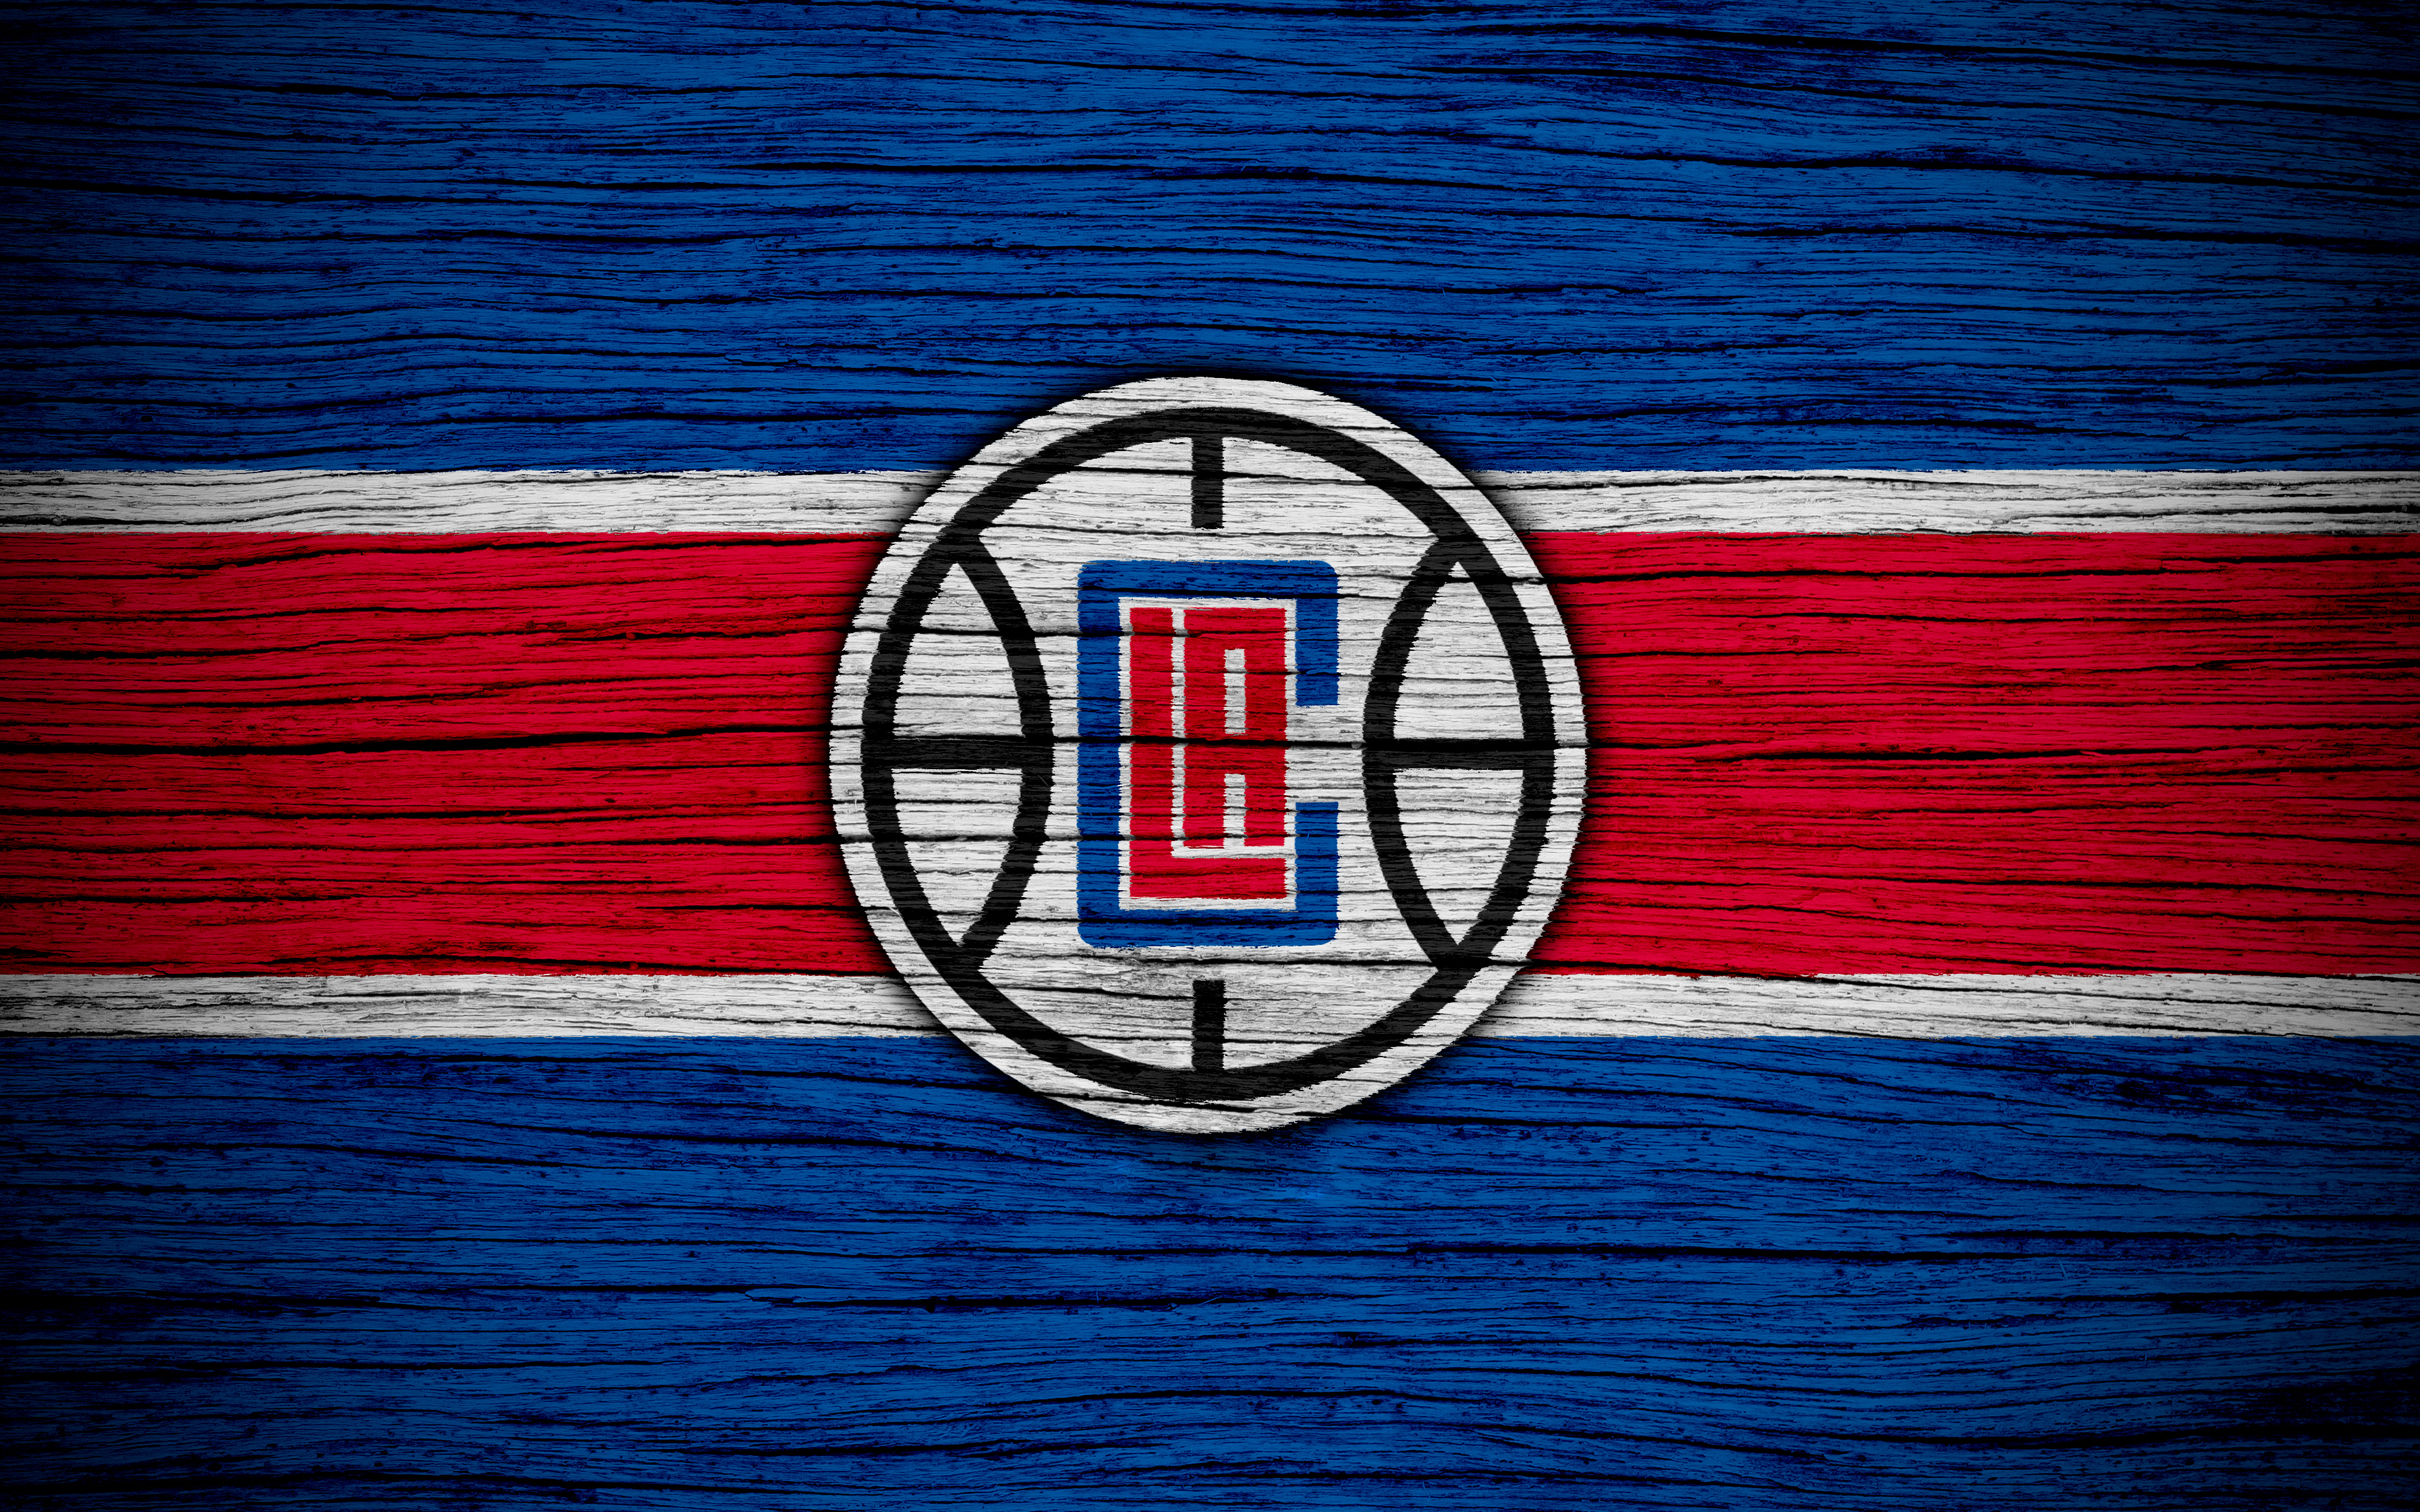 La Clippers Logos - HD Wallpaper 